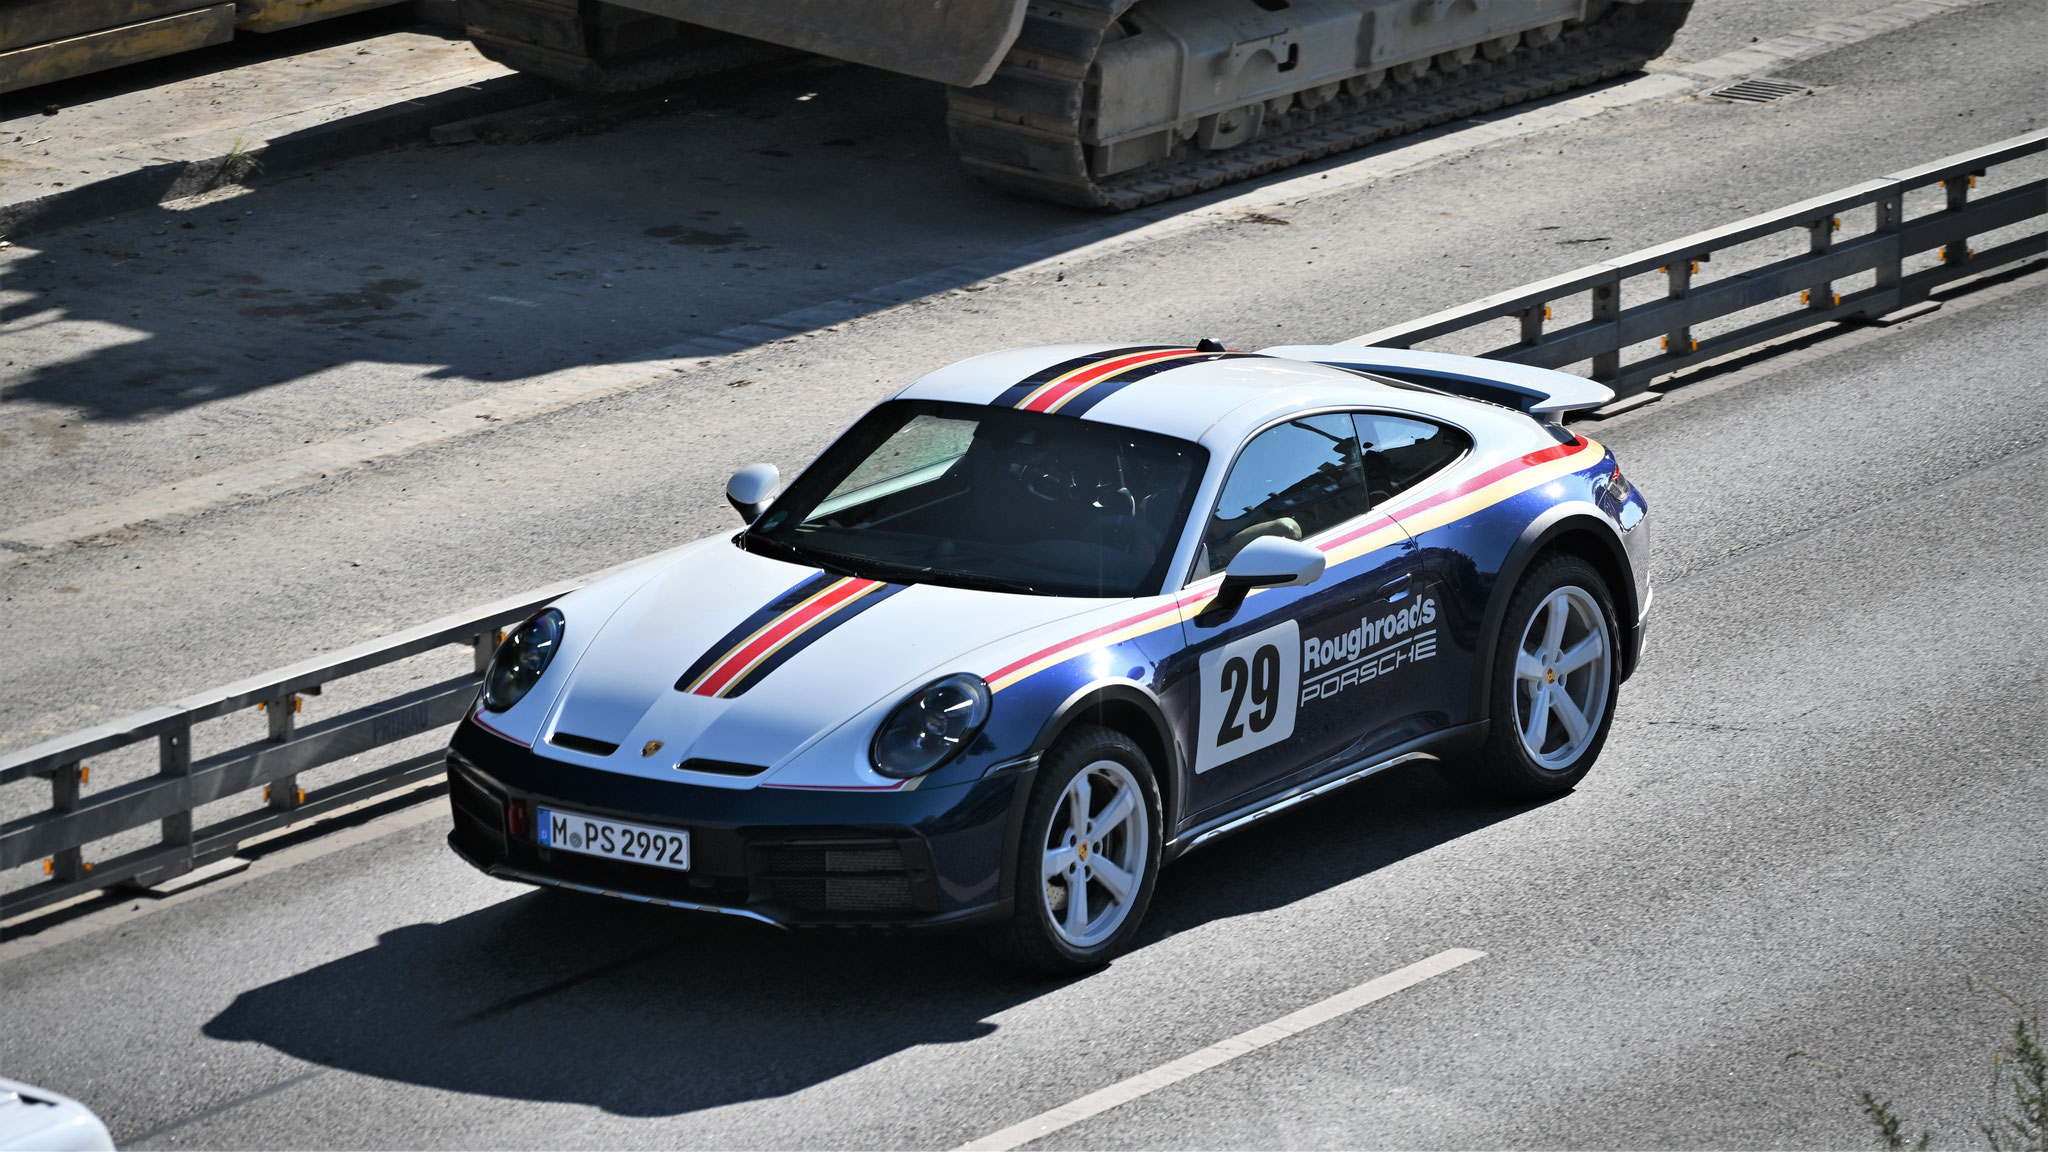 Porsche 911 Dakar - M-PS2992